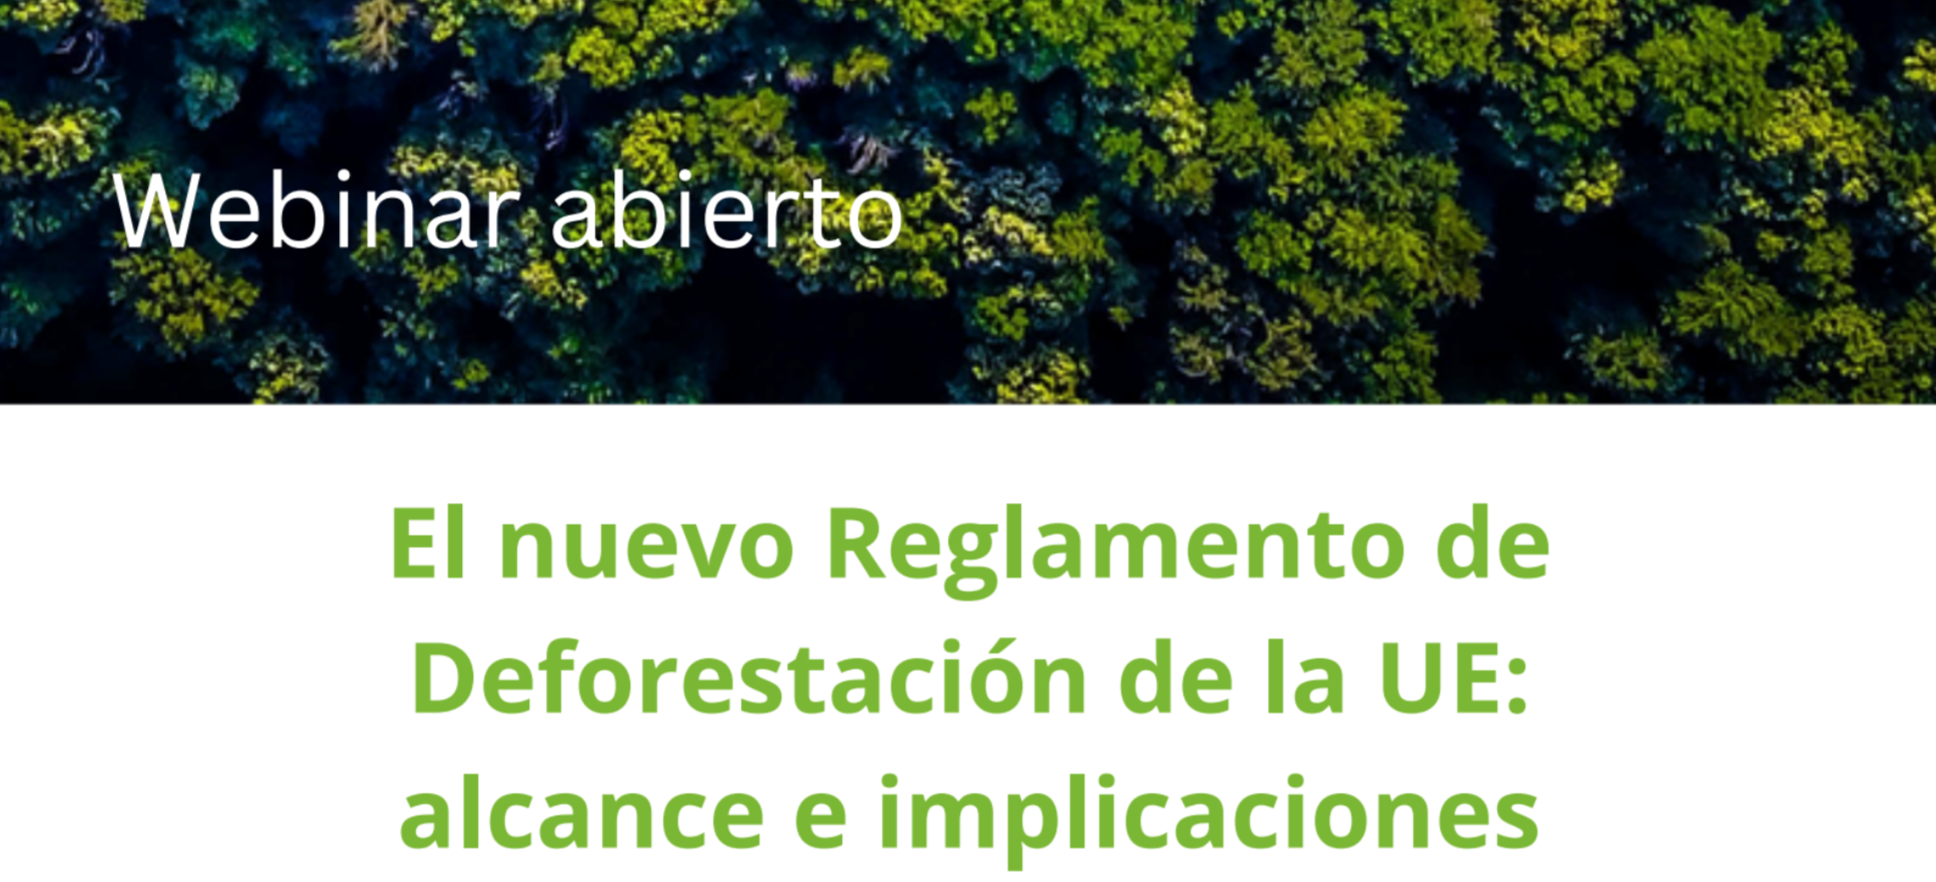 El nuevo Reglamento de Deforestación de la UE: alcance e implicaciones